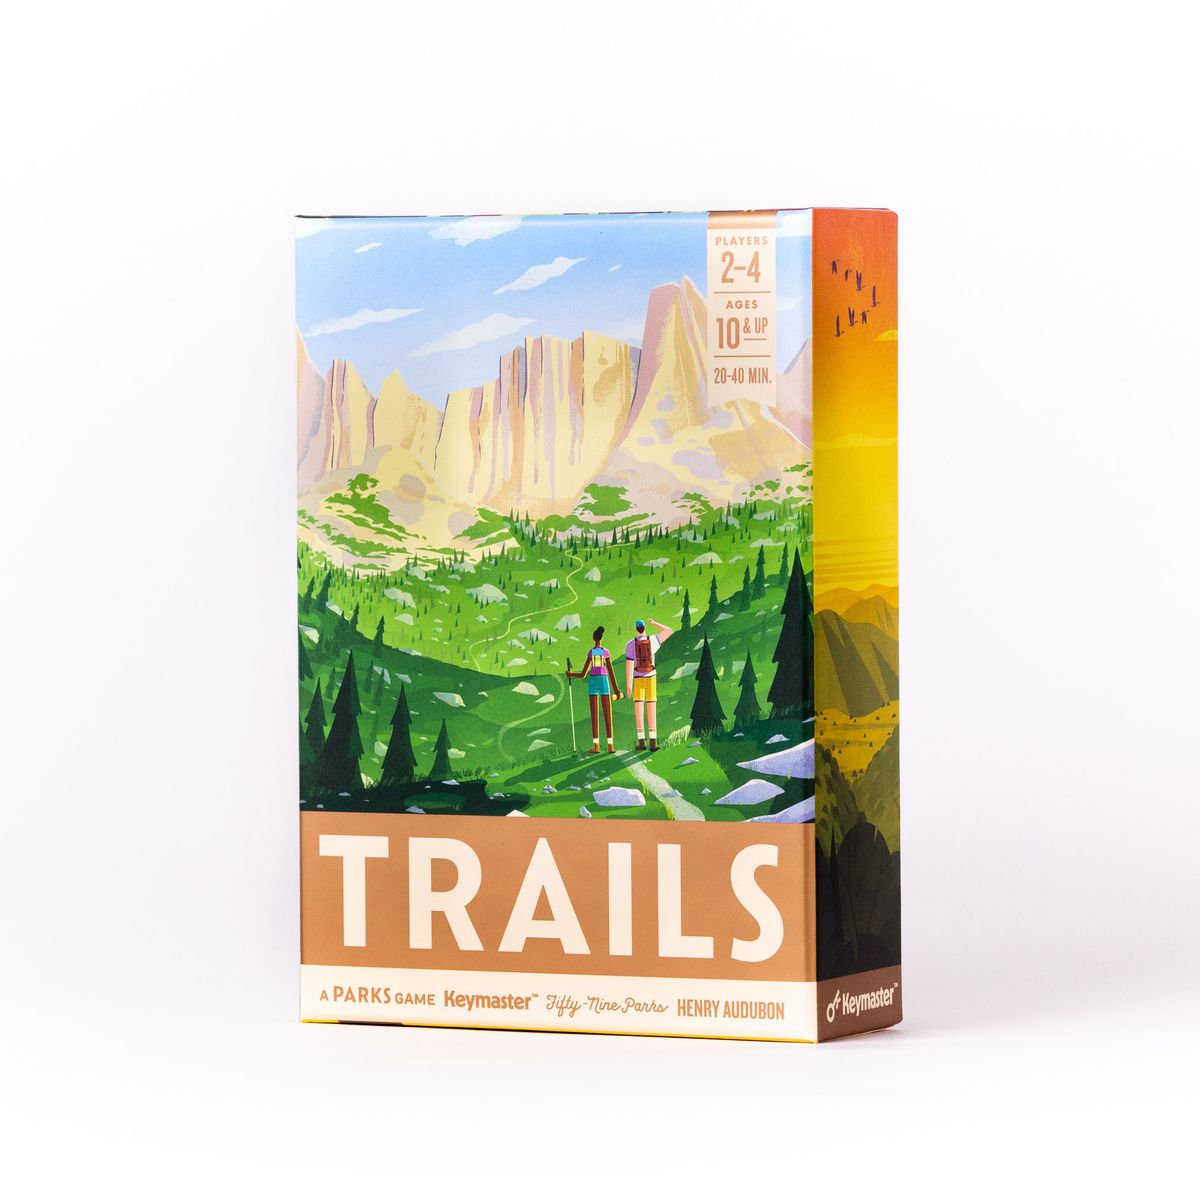 La copertina di Trails include un'immagine della serie di stampe di Fifty-Nine Parks: The Continental Divide Trail.